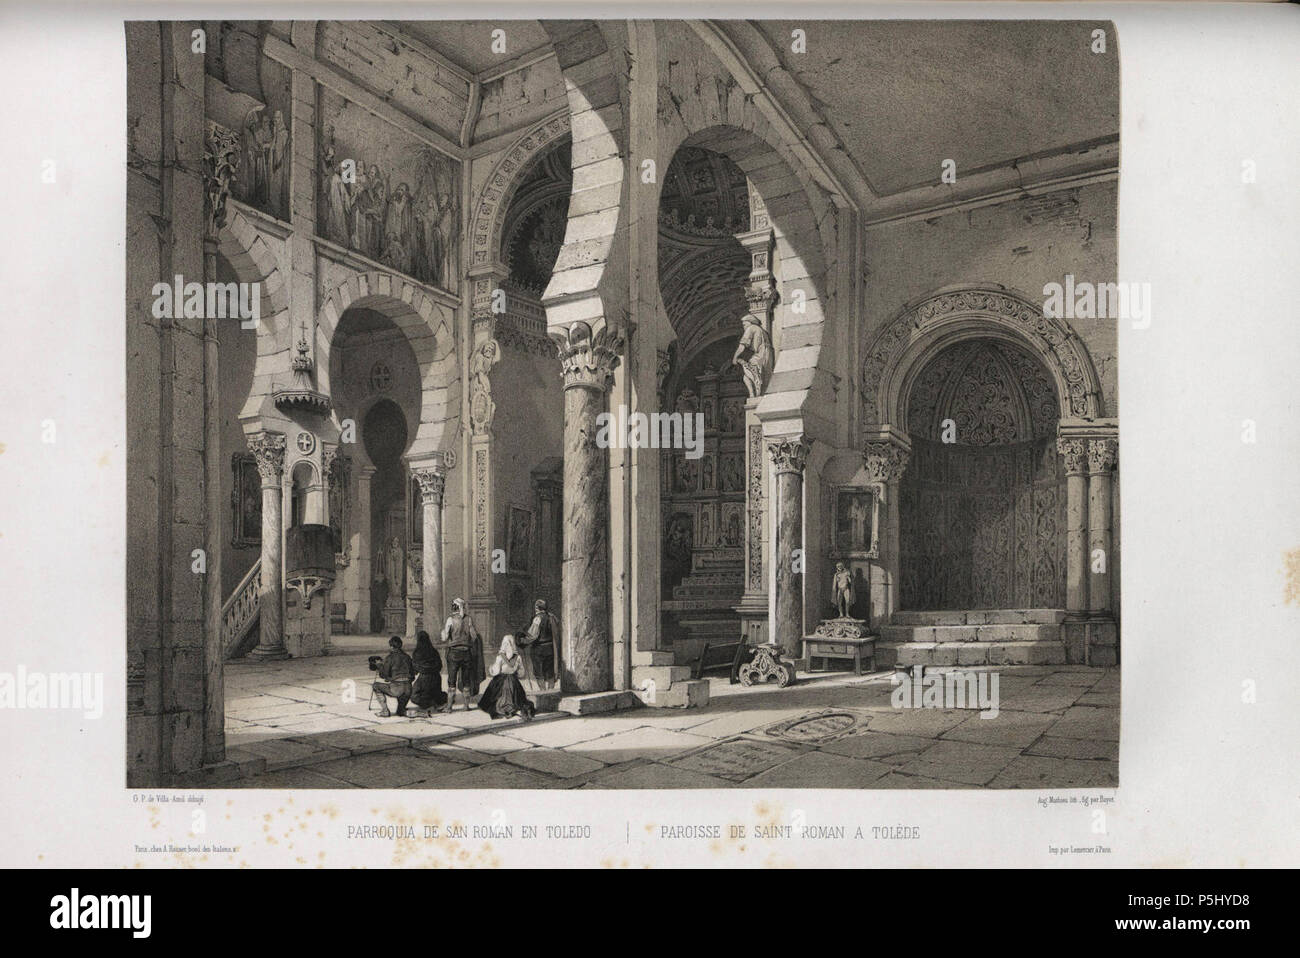 1850, España artística y monumental, vistas y descripción de los sitios y monumentos más notables de españa, vol 3, Parroquia de San Román en Toledo. Stock Photo